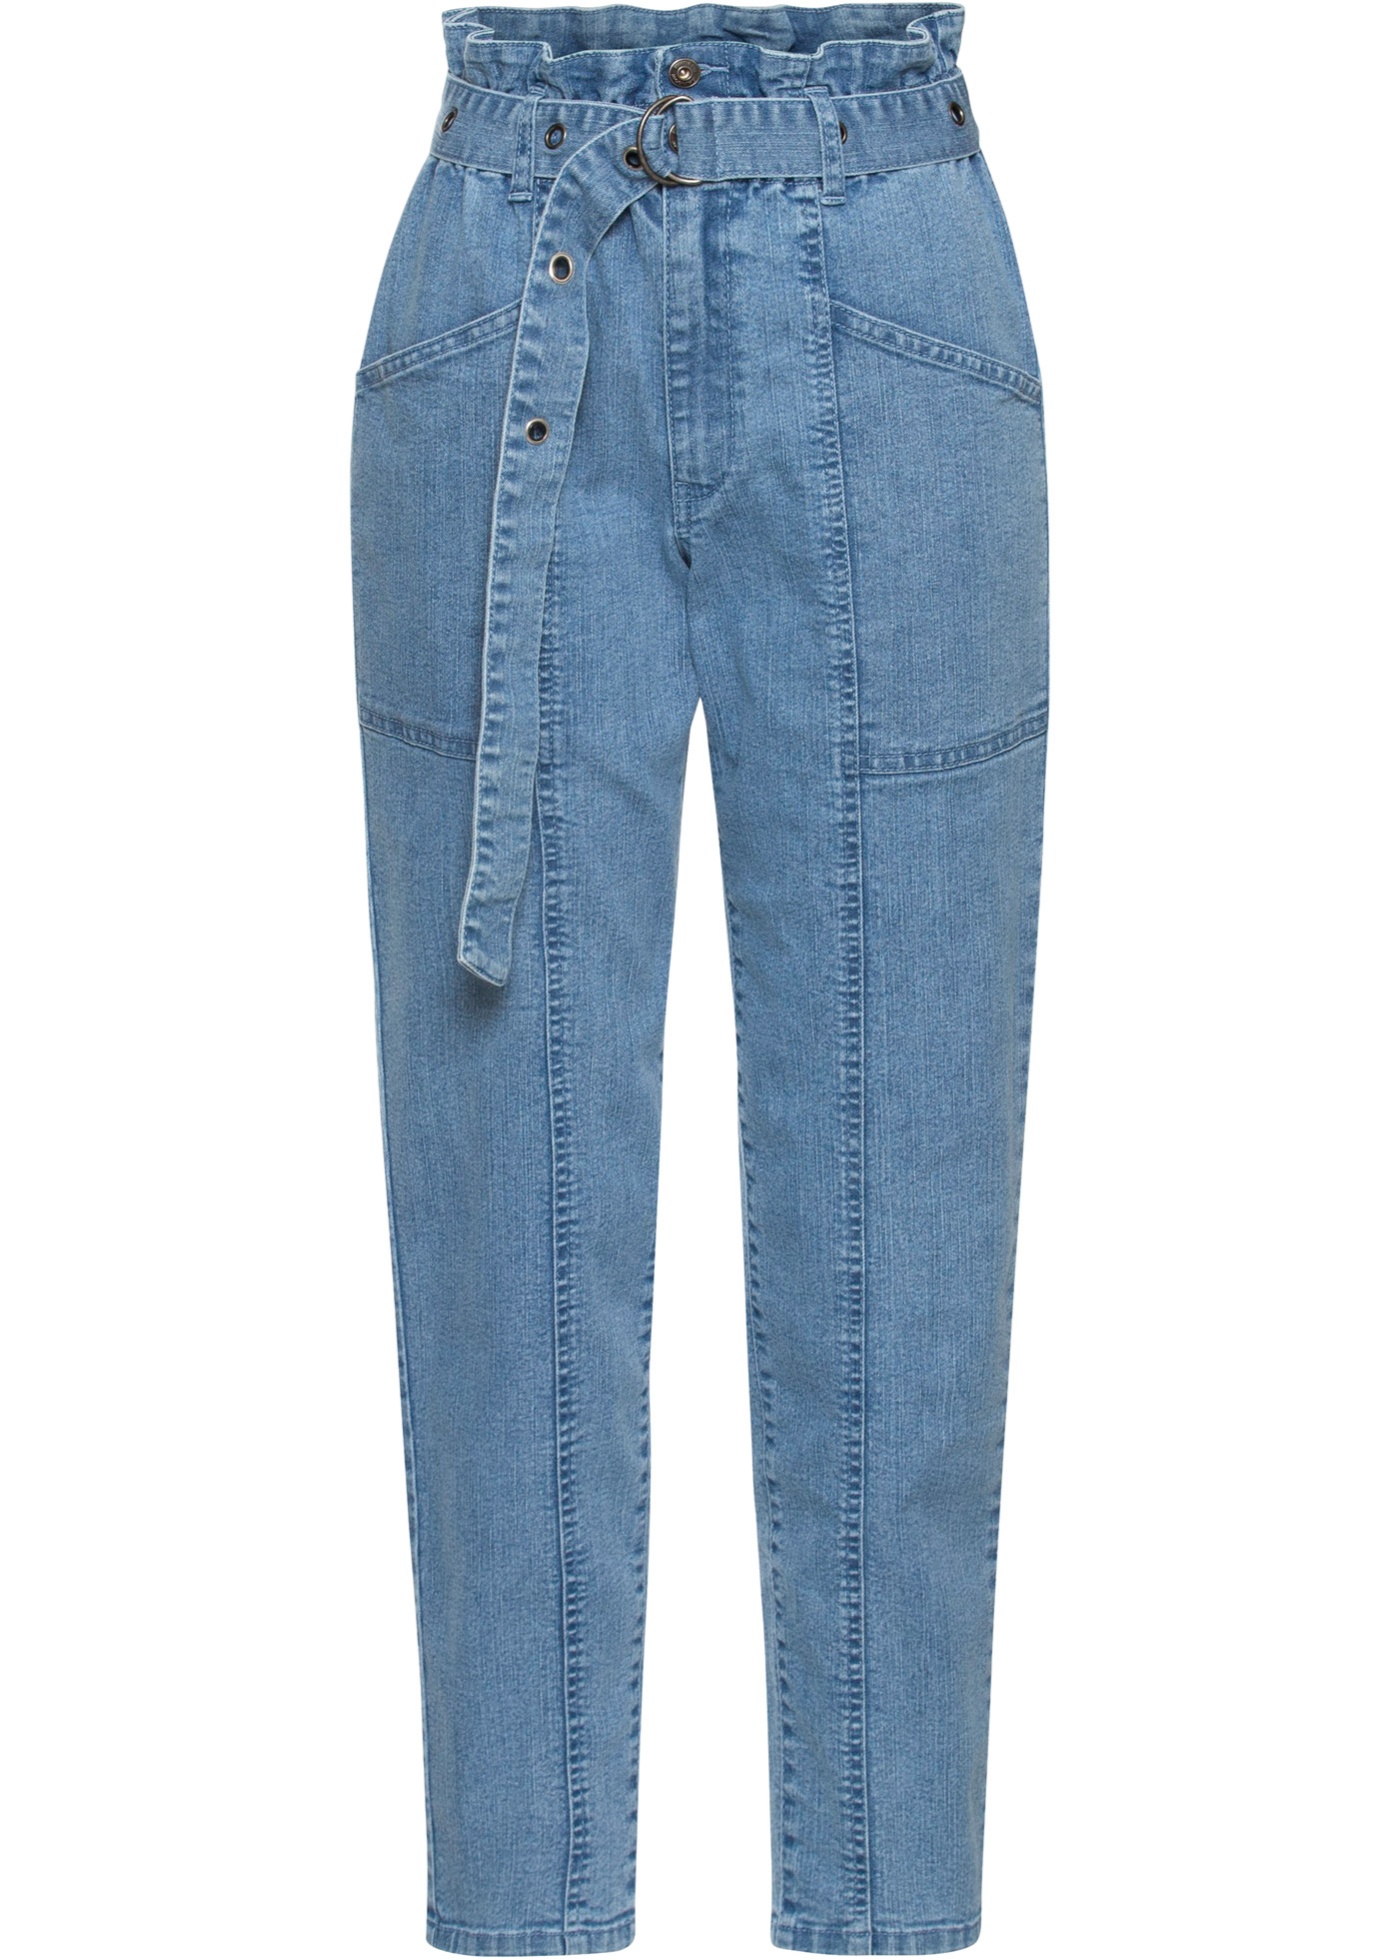 Trendy Cargo-Jeans mit Paperbag-Bund und Gürtel (90363681) in hellblau denim